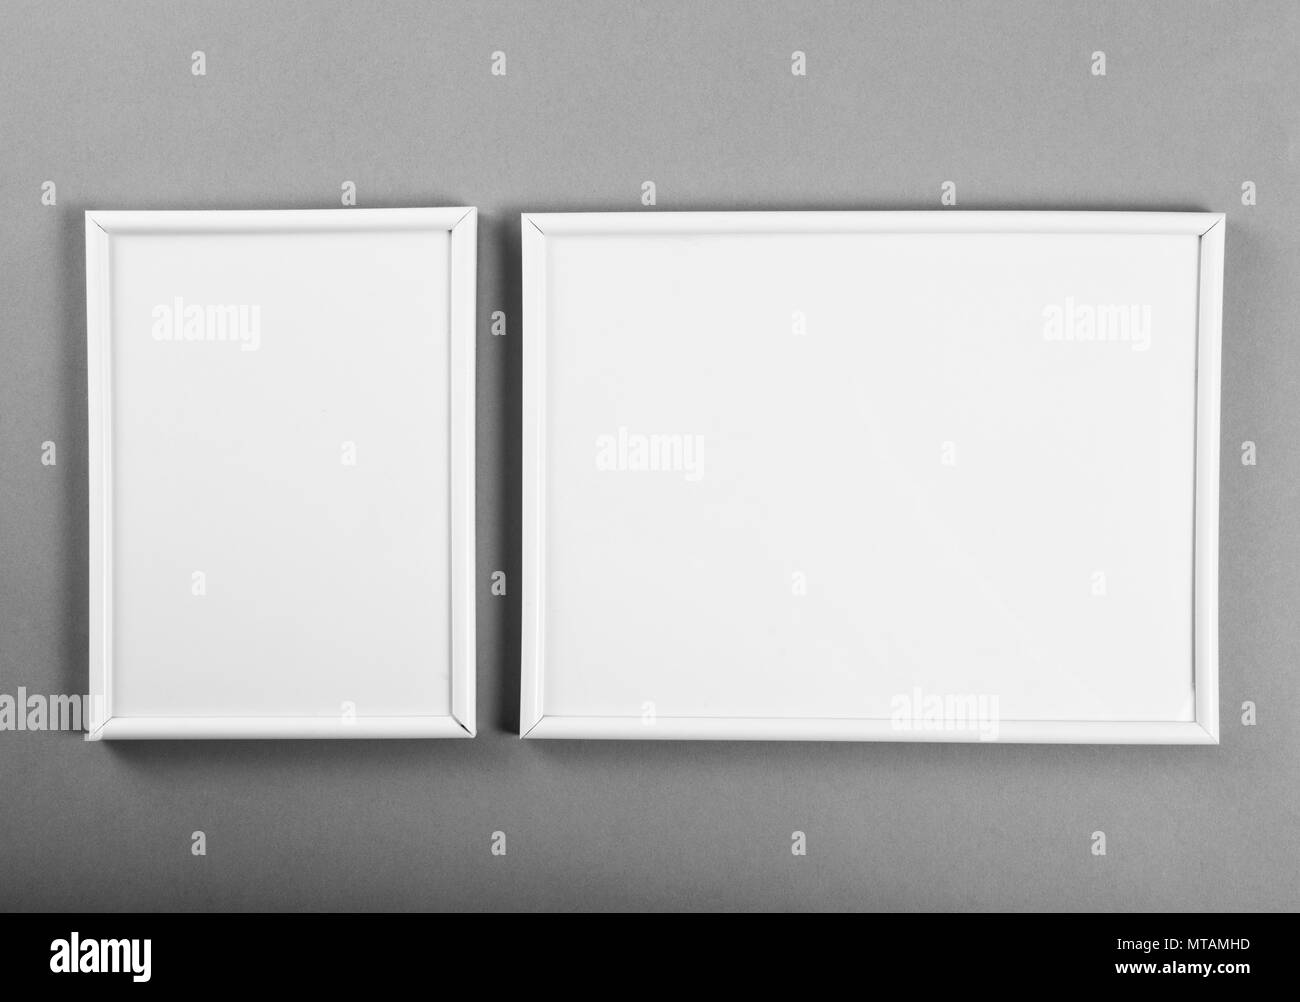 Blanco marcos para cuadros o fotografías sobre fondo gris Fotografía de  stock - Alamy